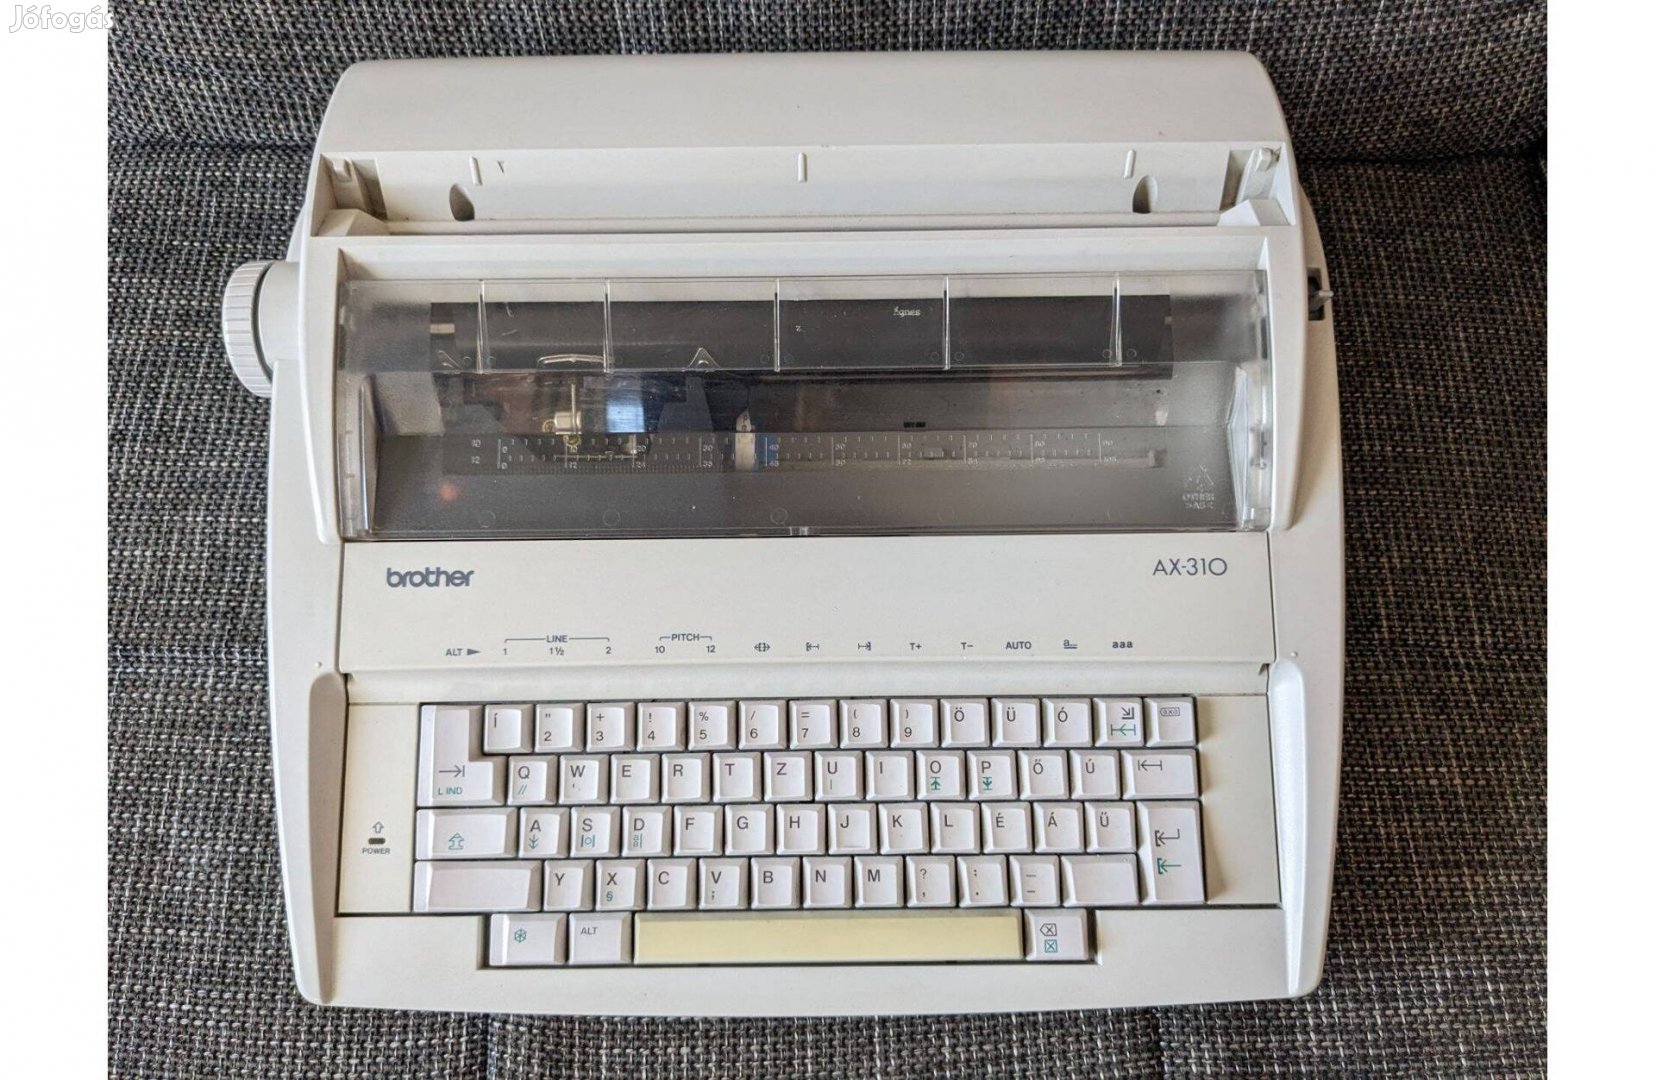 Brother AX-310 írógép, tökéletes állapotban. Vecsésen átvehető